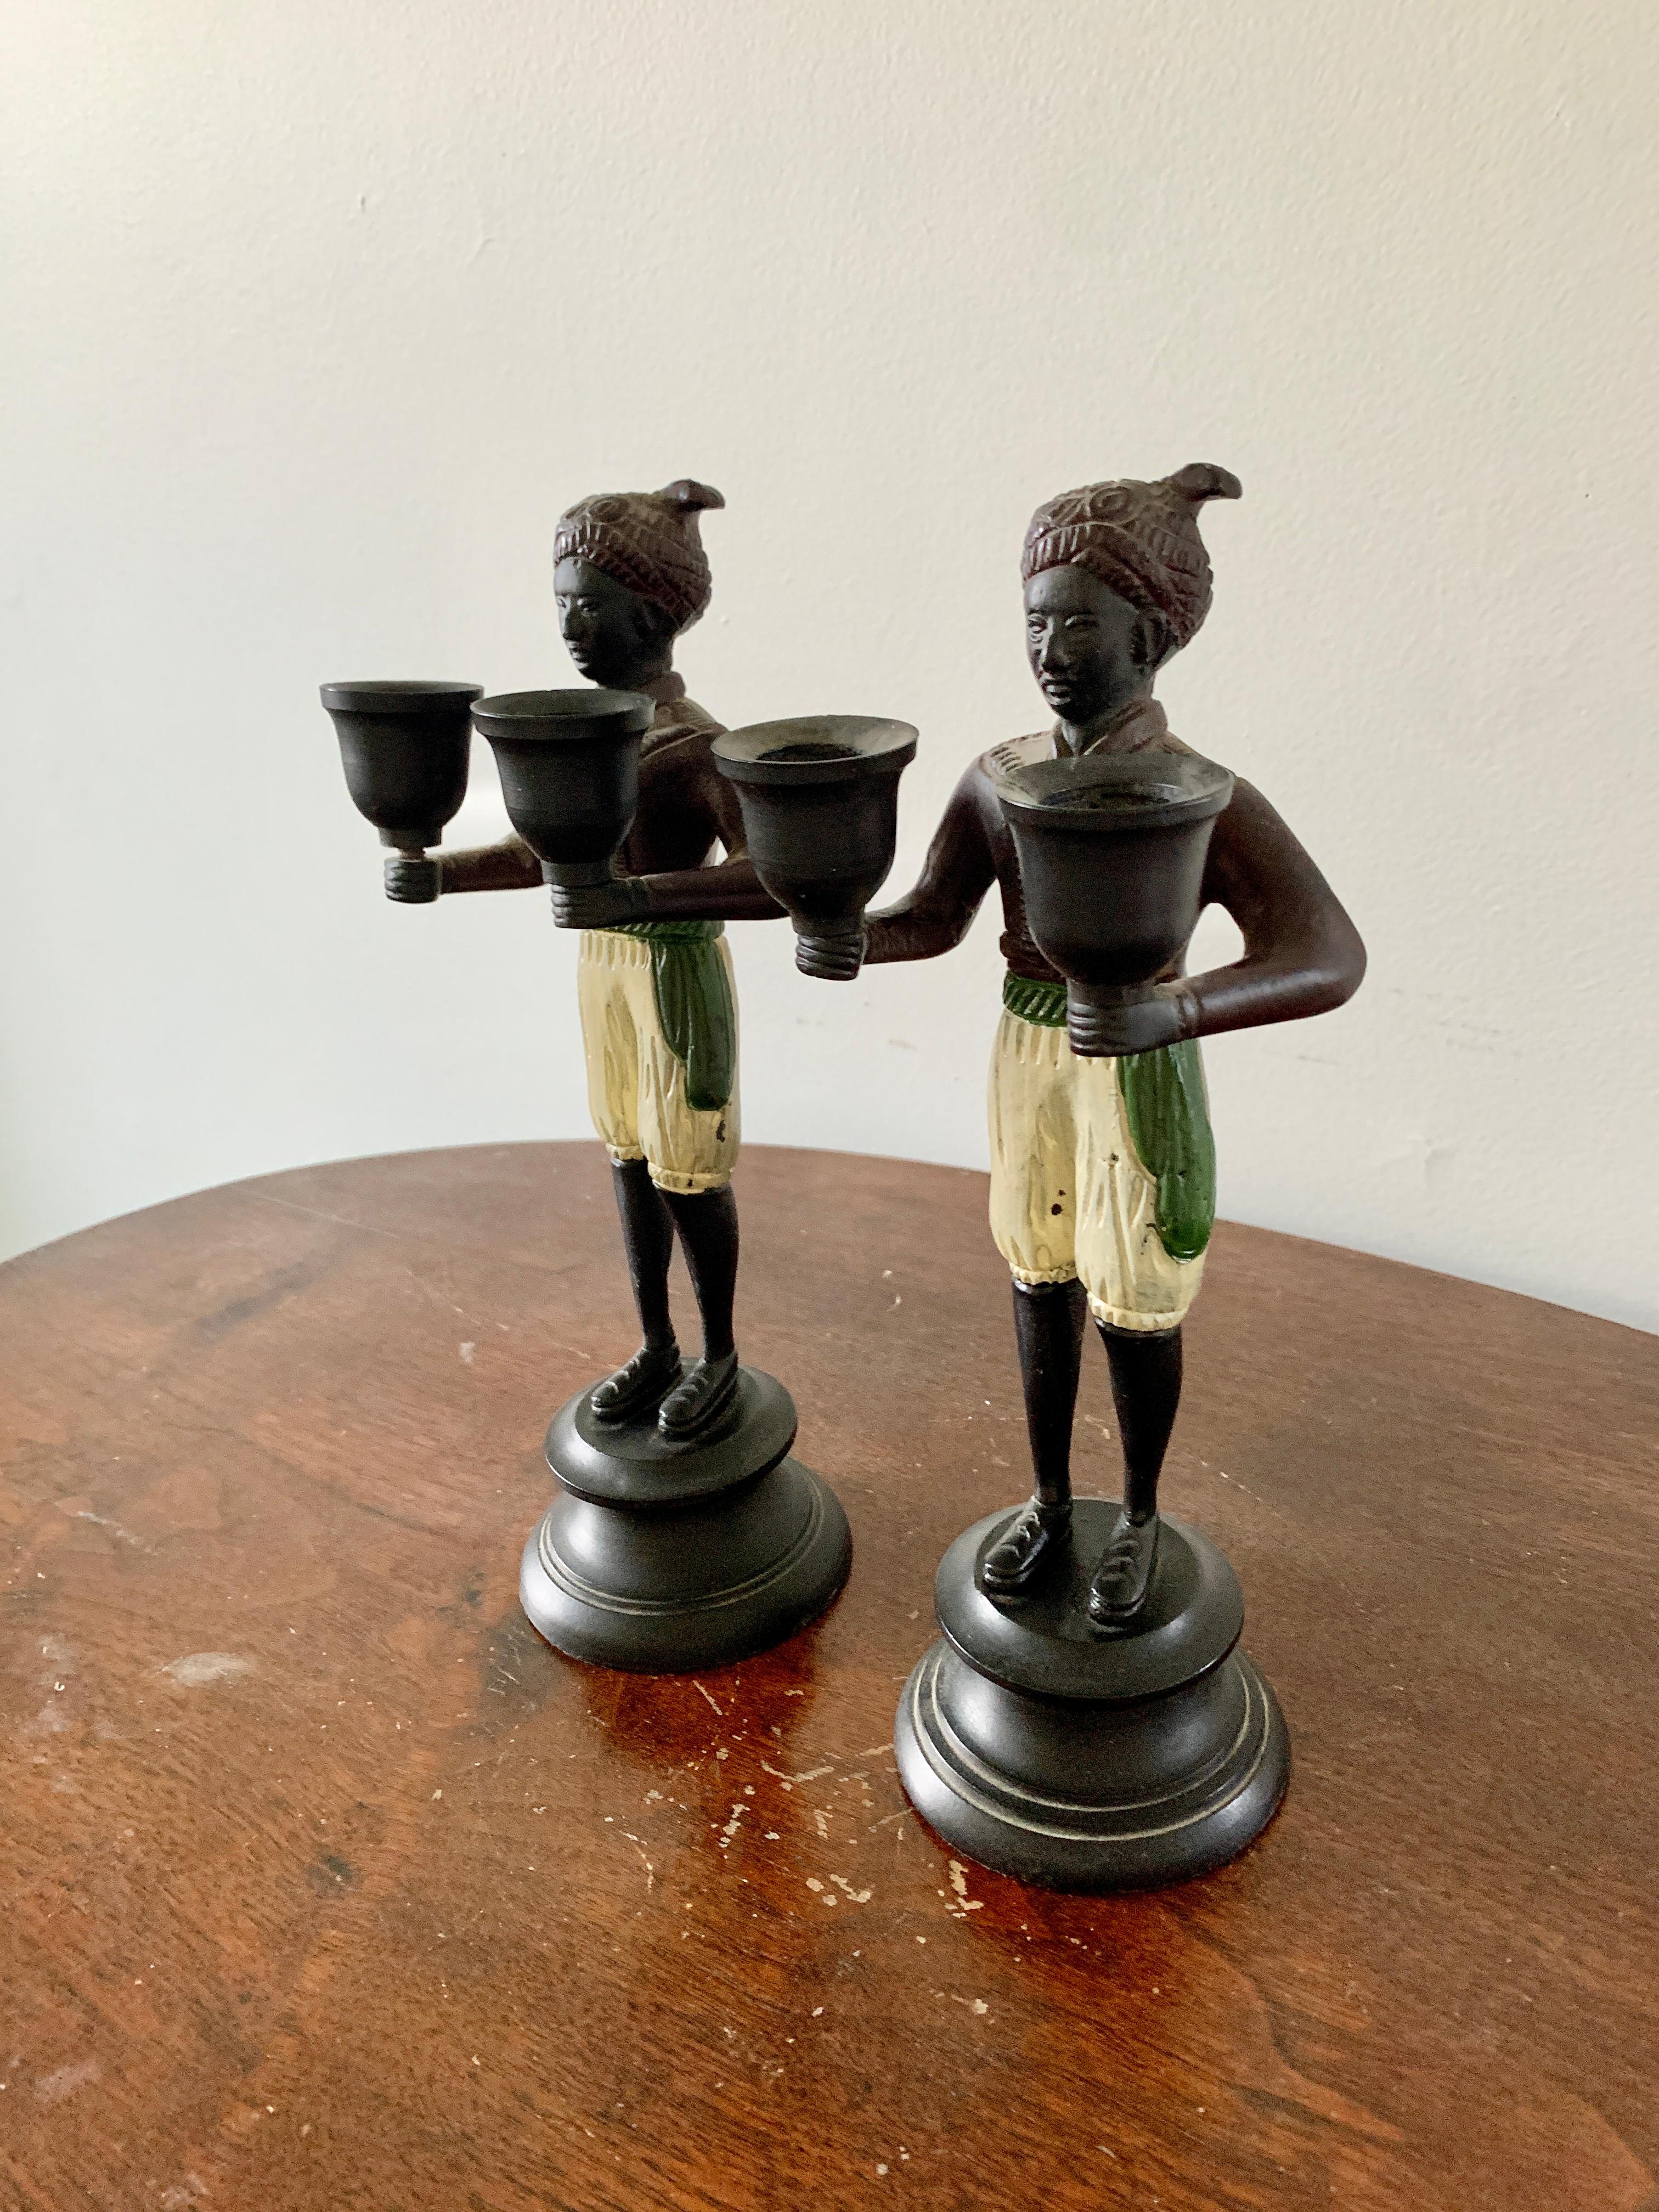 Ein schönes Paar von gegossenen Bronzestatuen von Männern, die zwei Kerzenbecher tragen

USA, Ende des 20. Jahrhunderts 

Maße: 4 